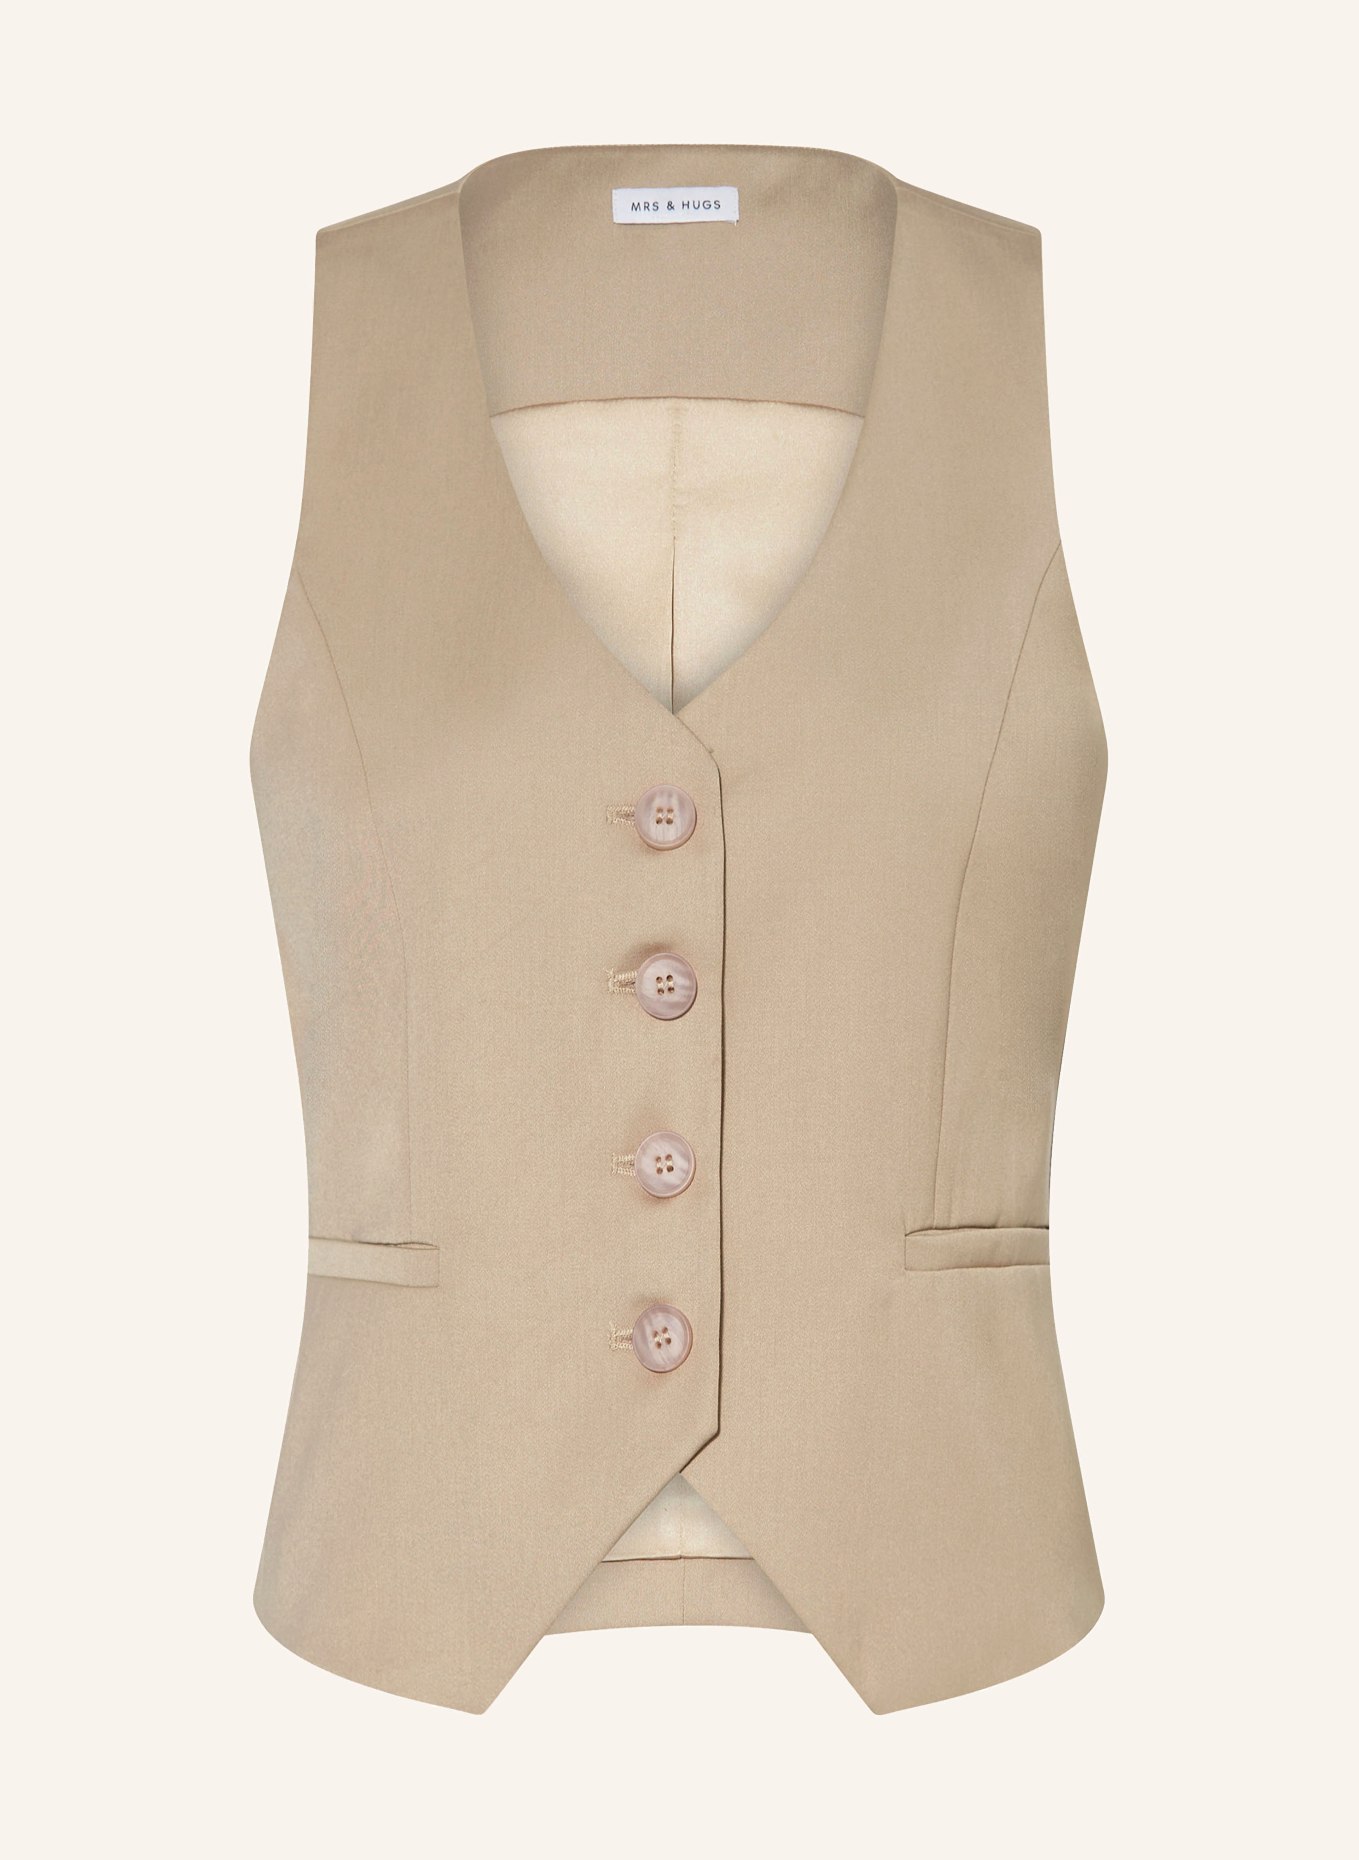 MRS & HUGS Vest, Color: BEIGE (Image 1)